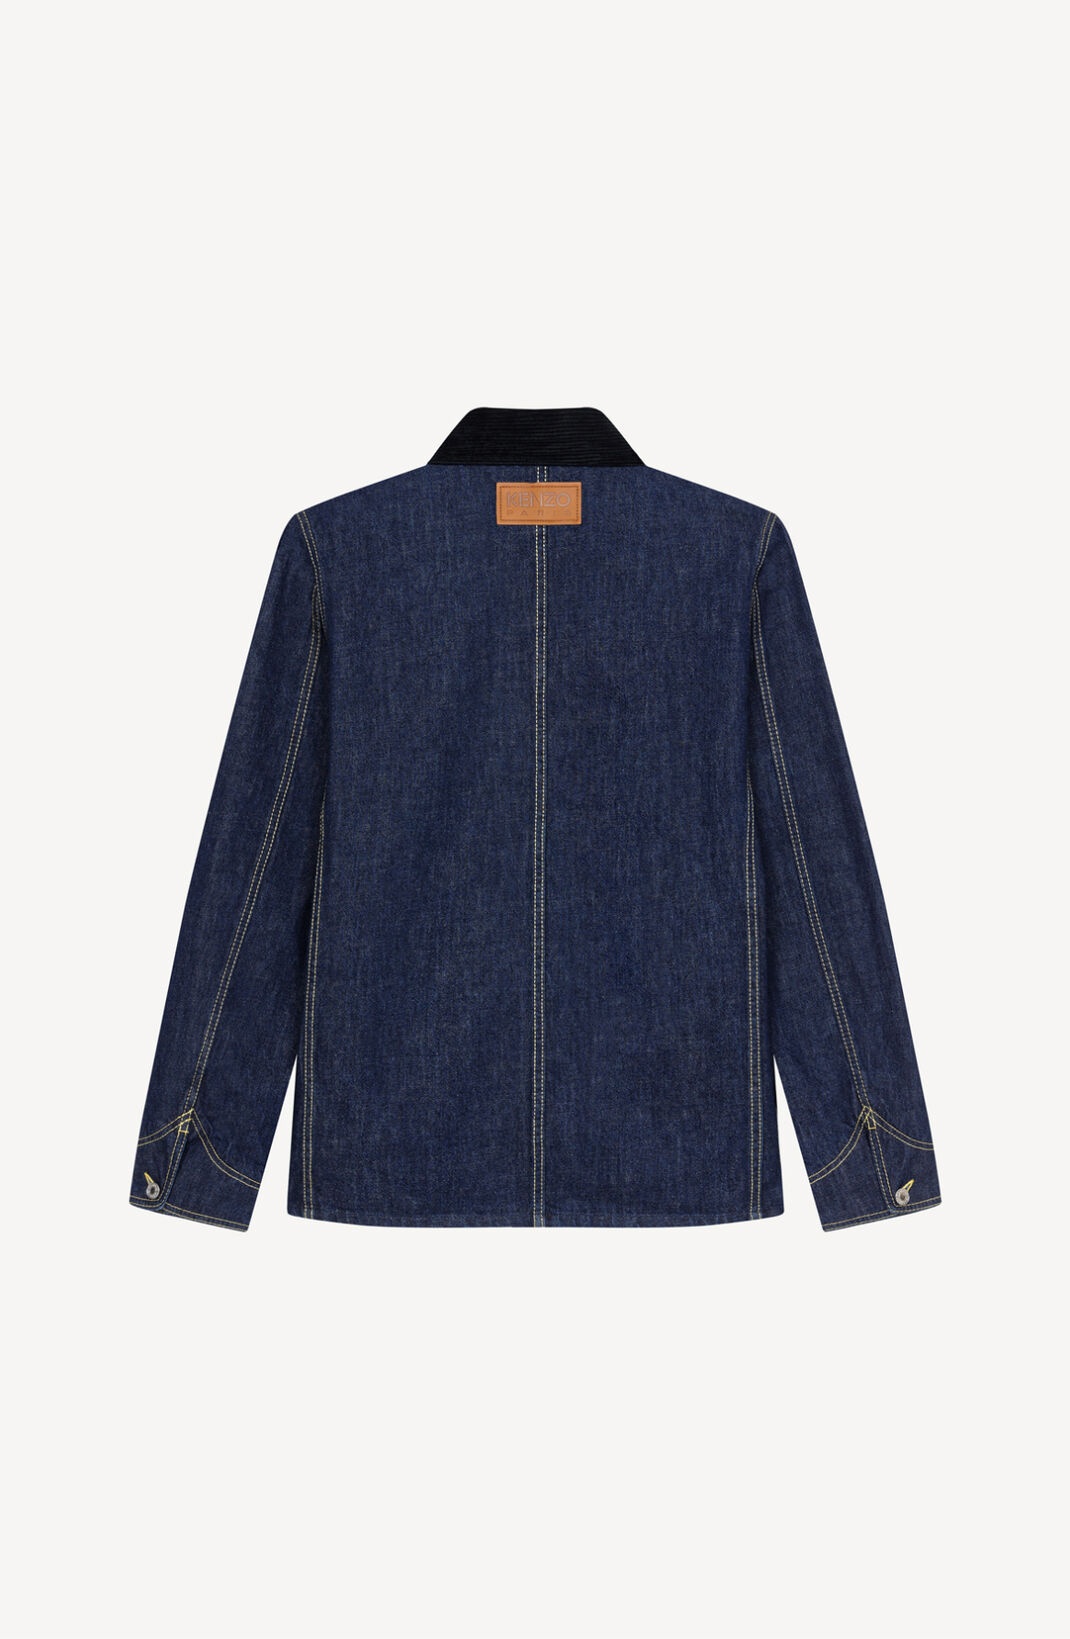 'KENZO Poppy' workwear denim jacket - 9